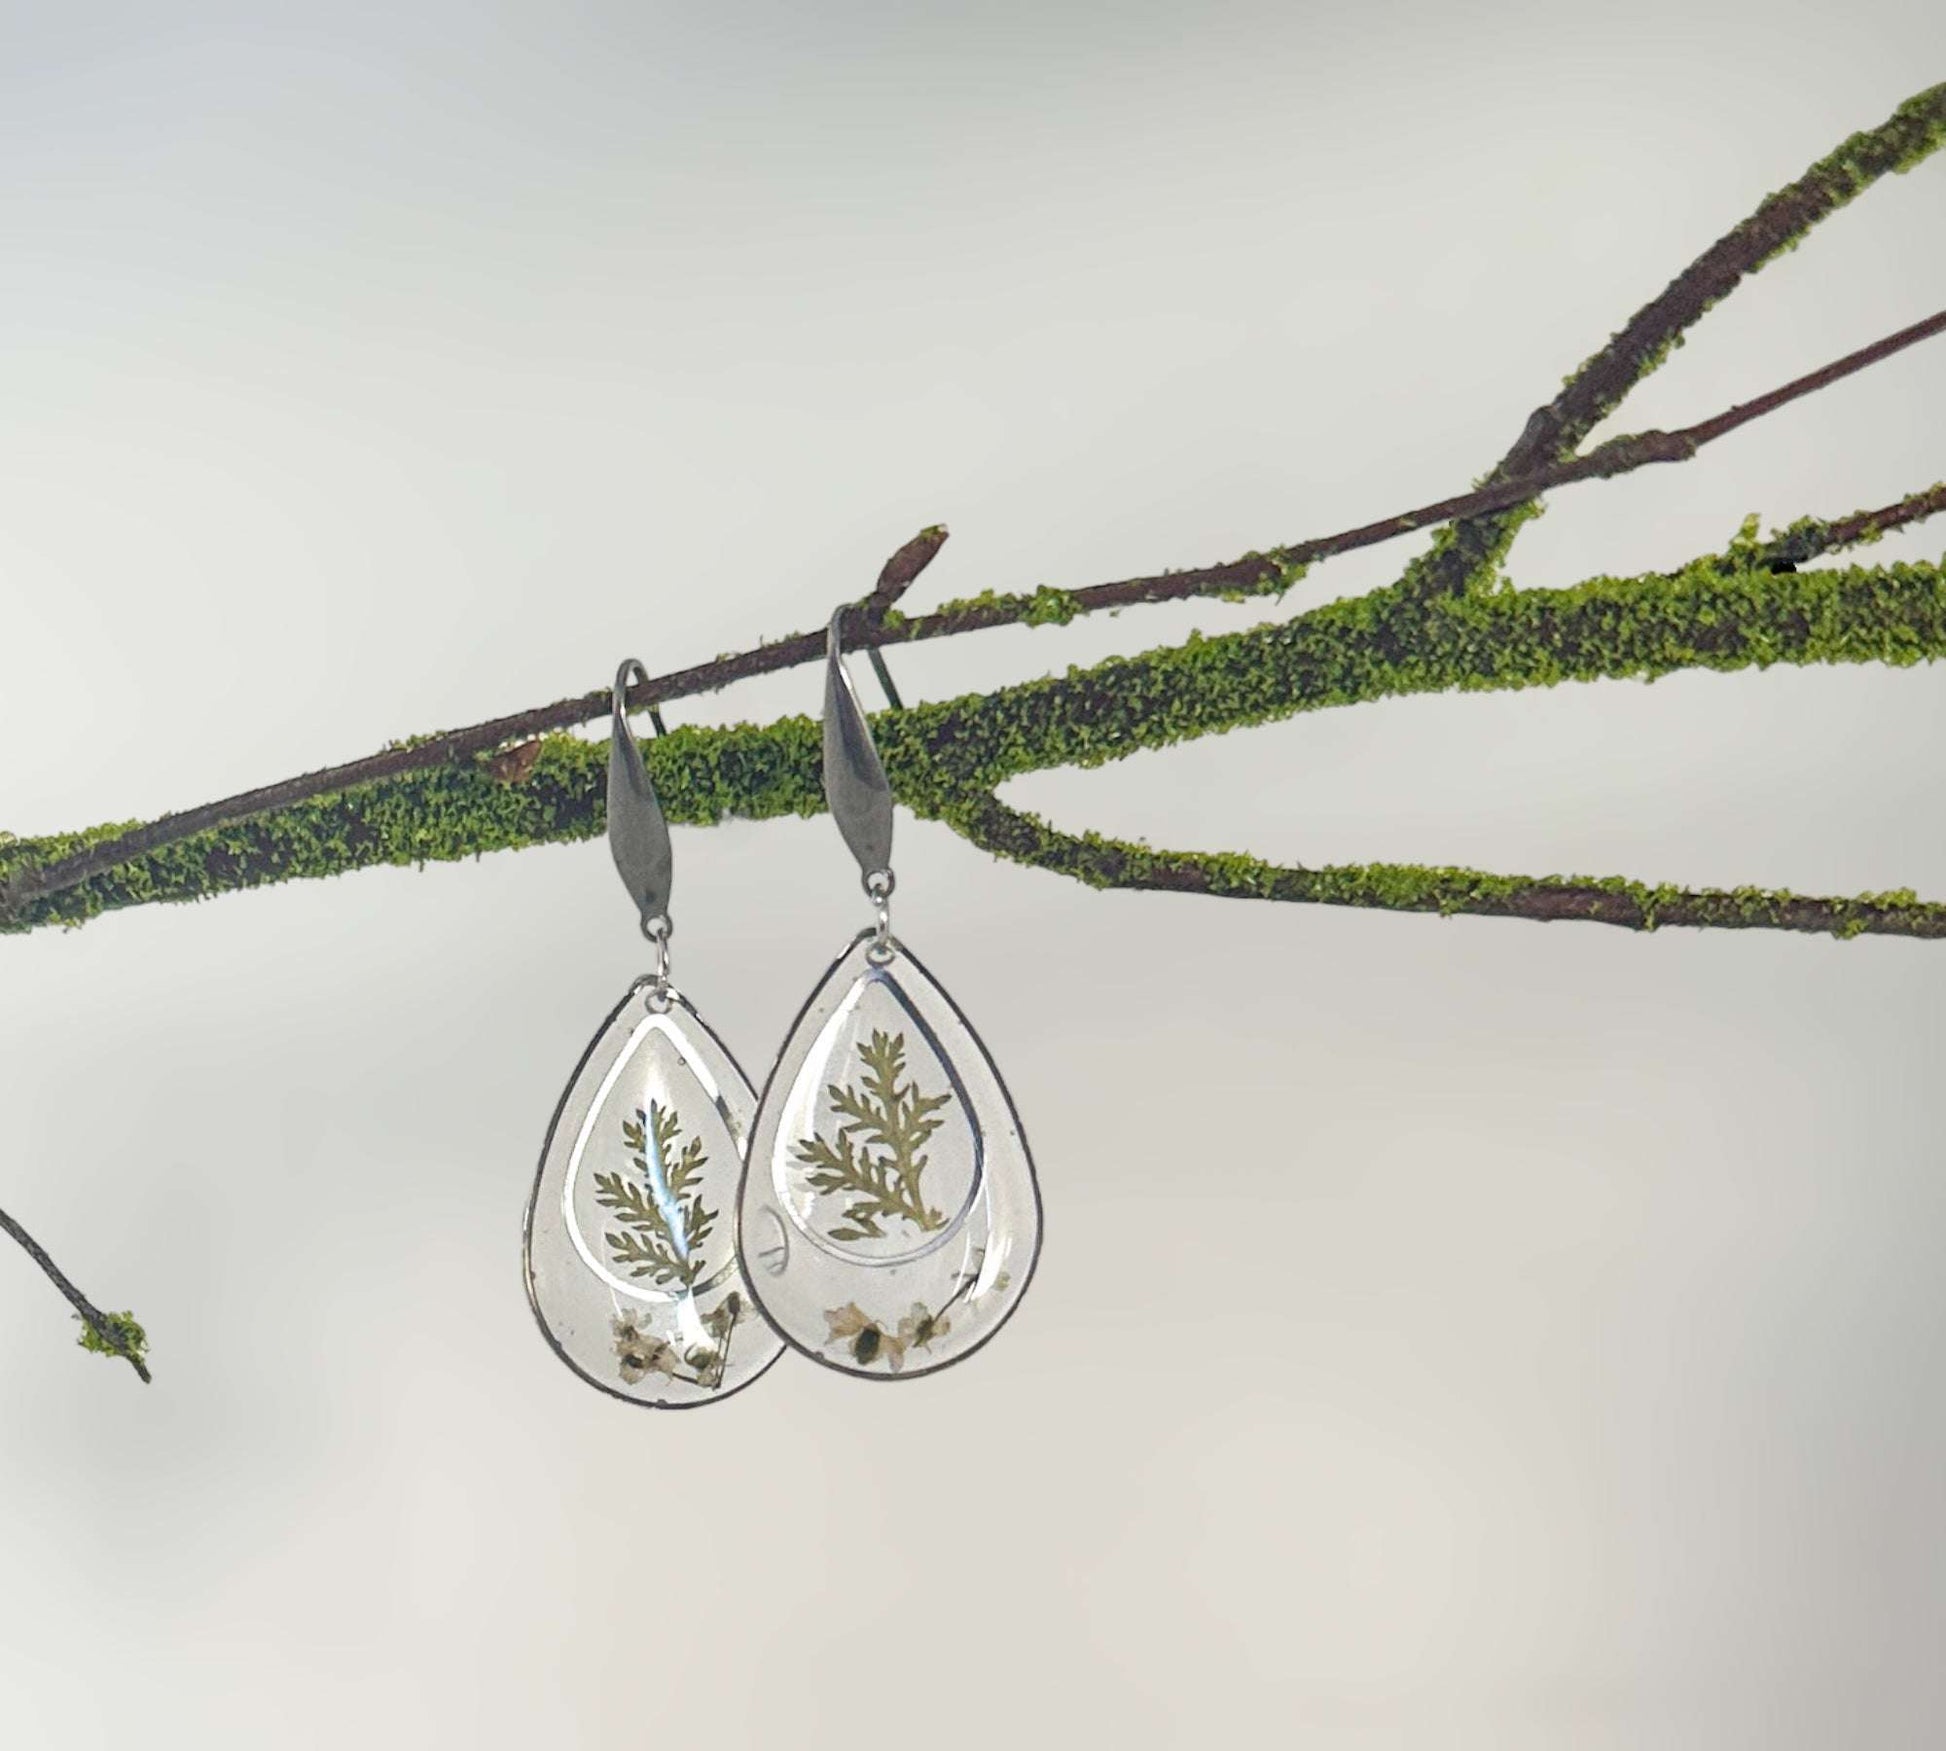 Fern Forest Charm - Handmade Botanical Resin Earrings